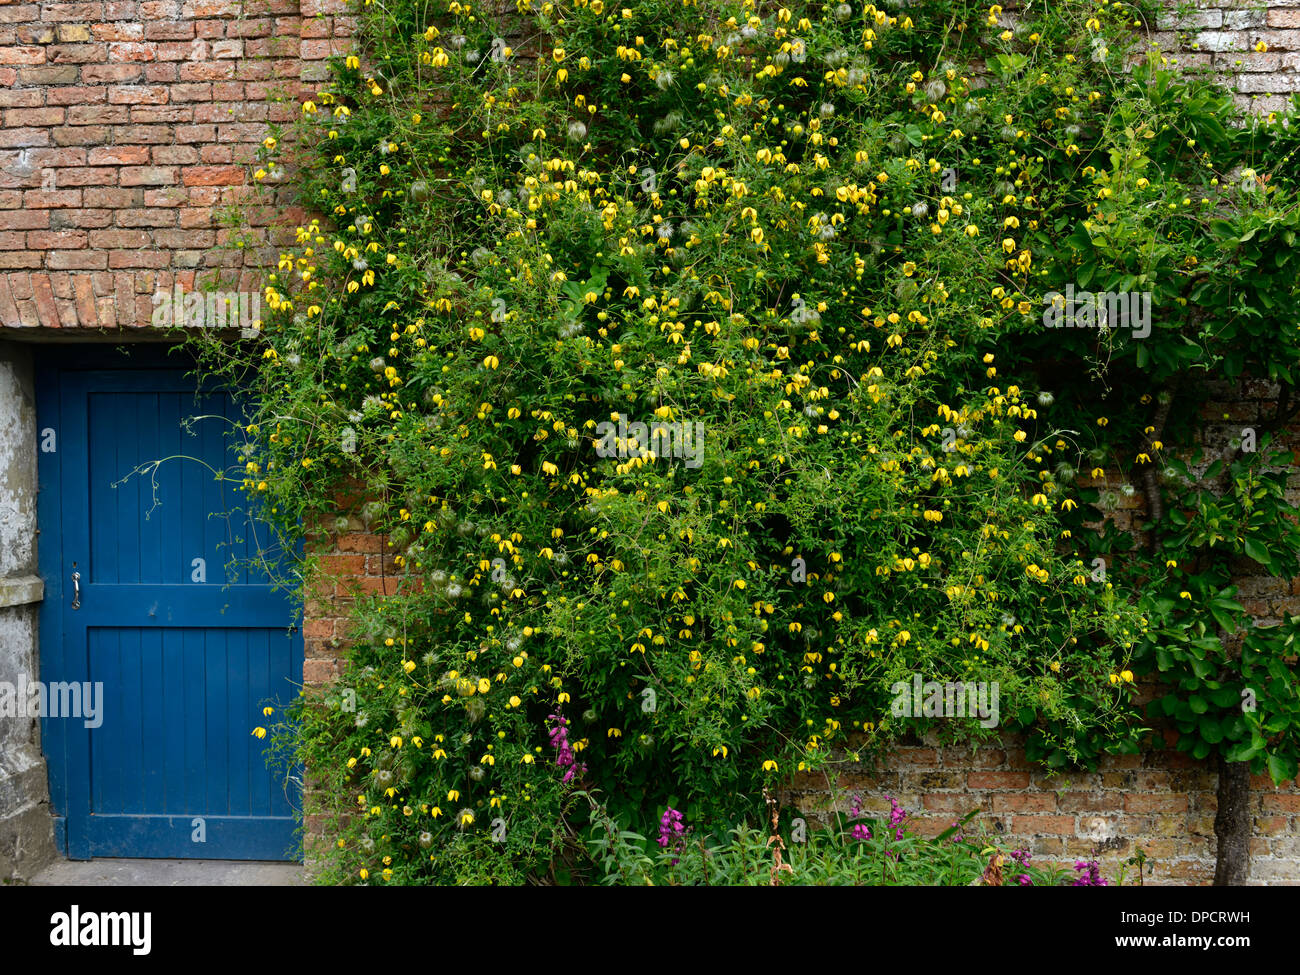 Clematis tangutica escalade grimpeur vigoureux fleur jaune montée en fleurs fleurs mur végétal jardinage porte bleue Banque D'Images